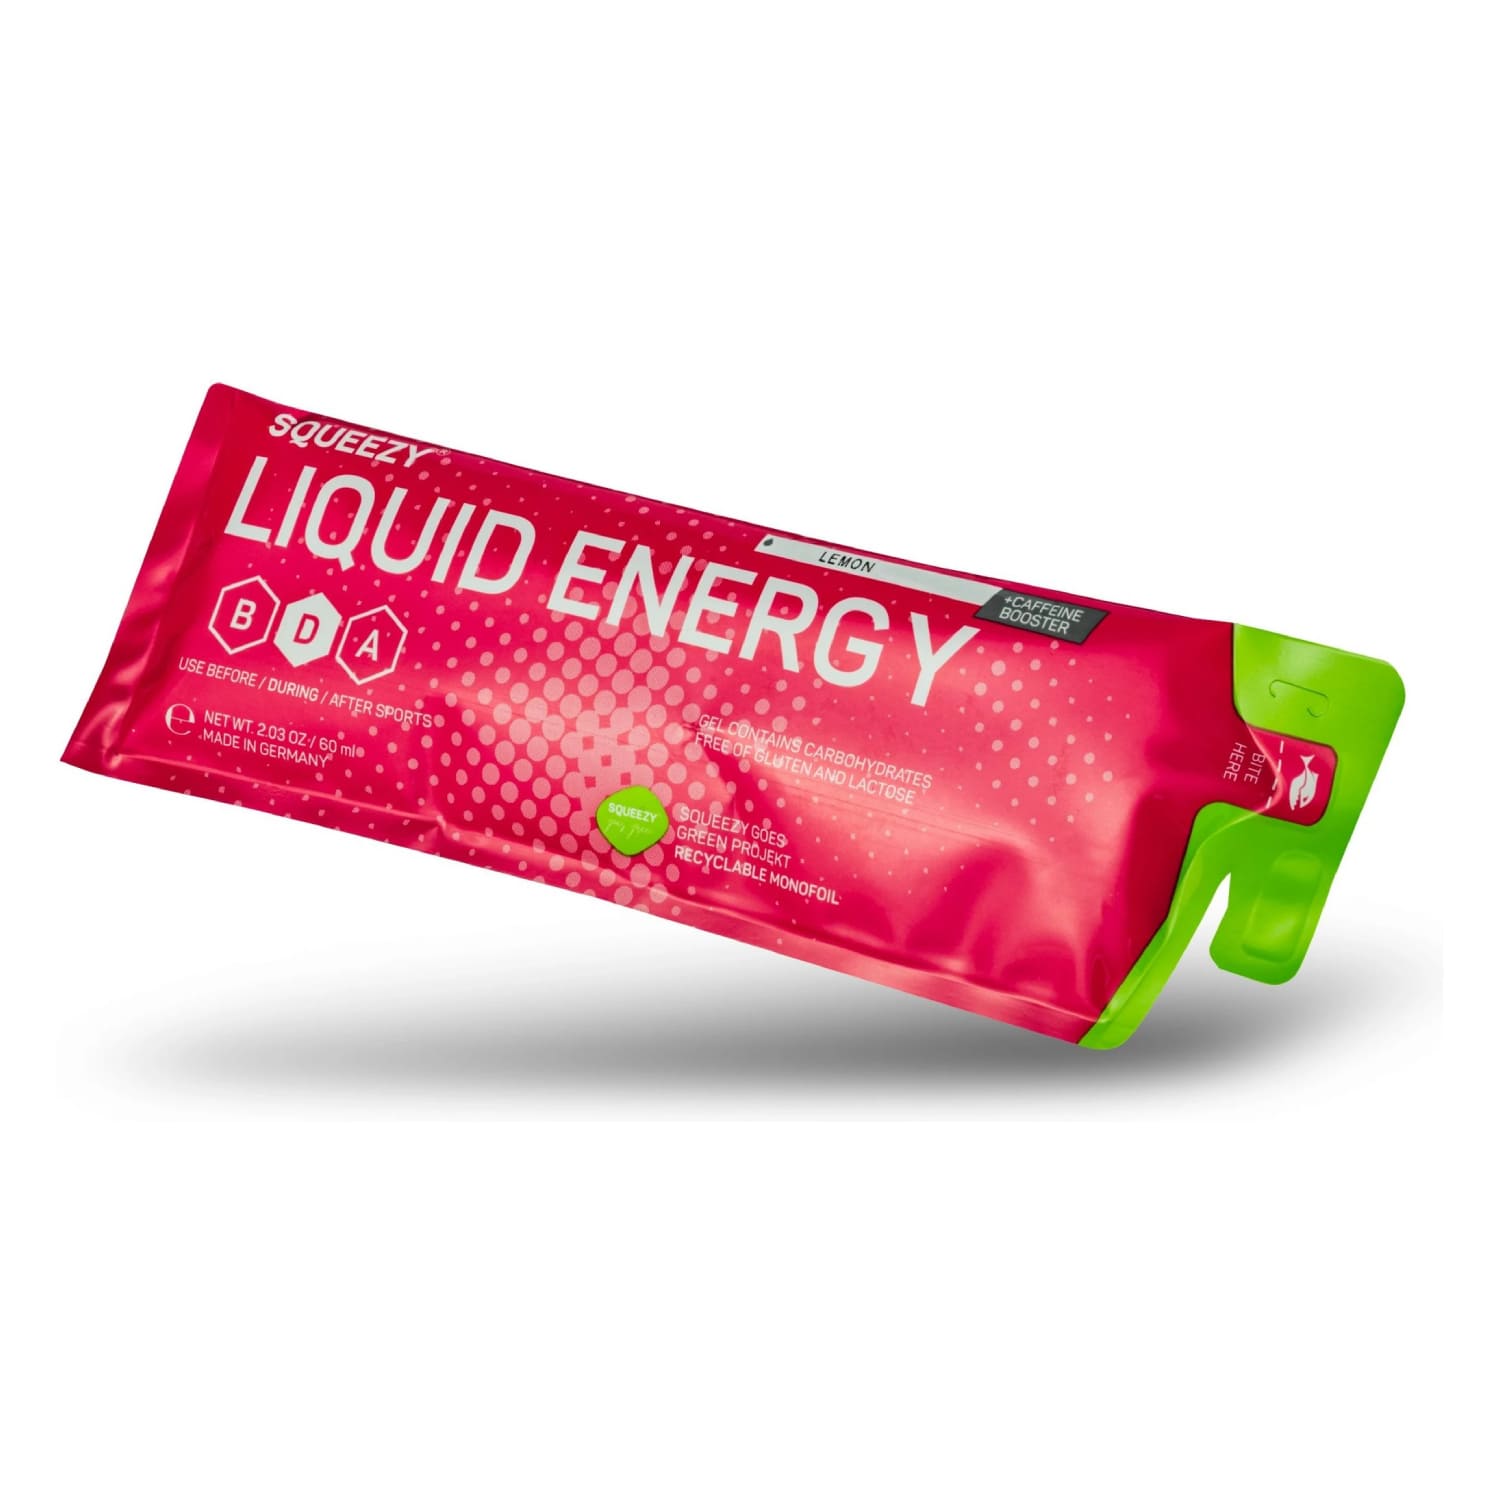 sqeezy-liquid-energy-raspberry-1